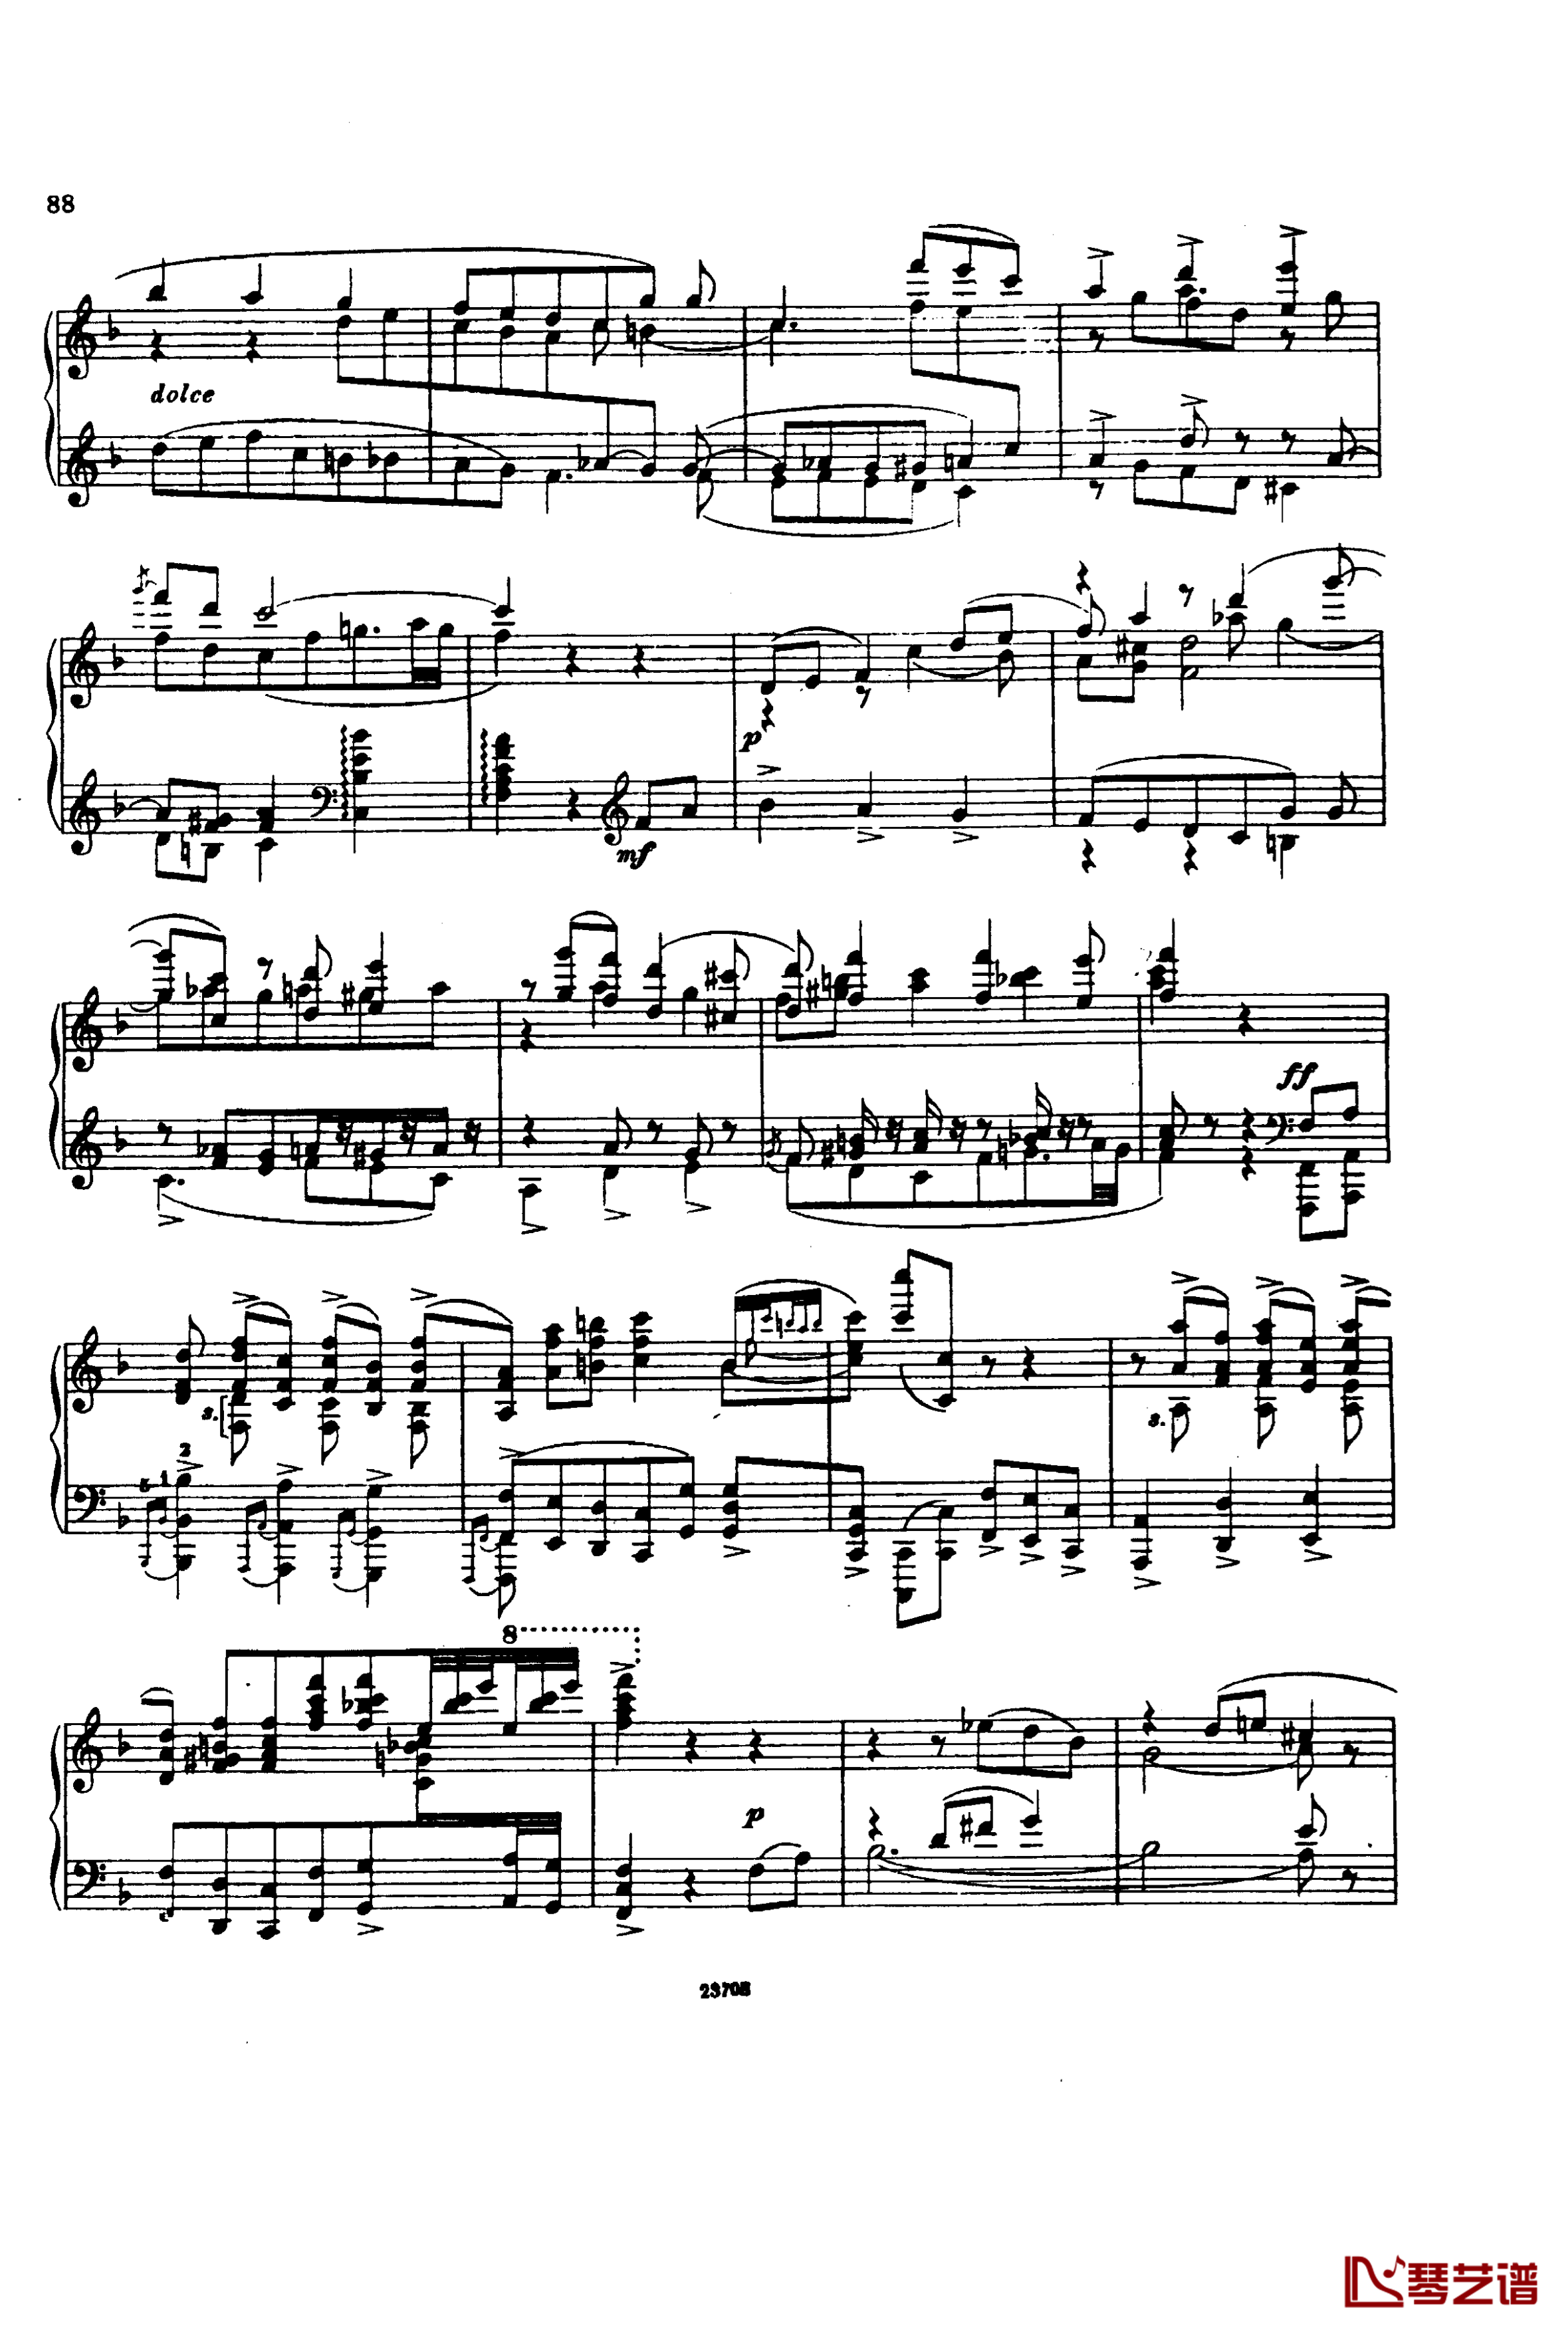 卡玛林斯卡亚幻想曲钢琴谱-格林卡2